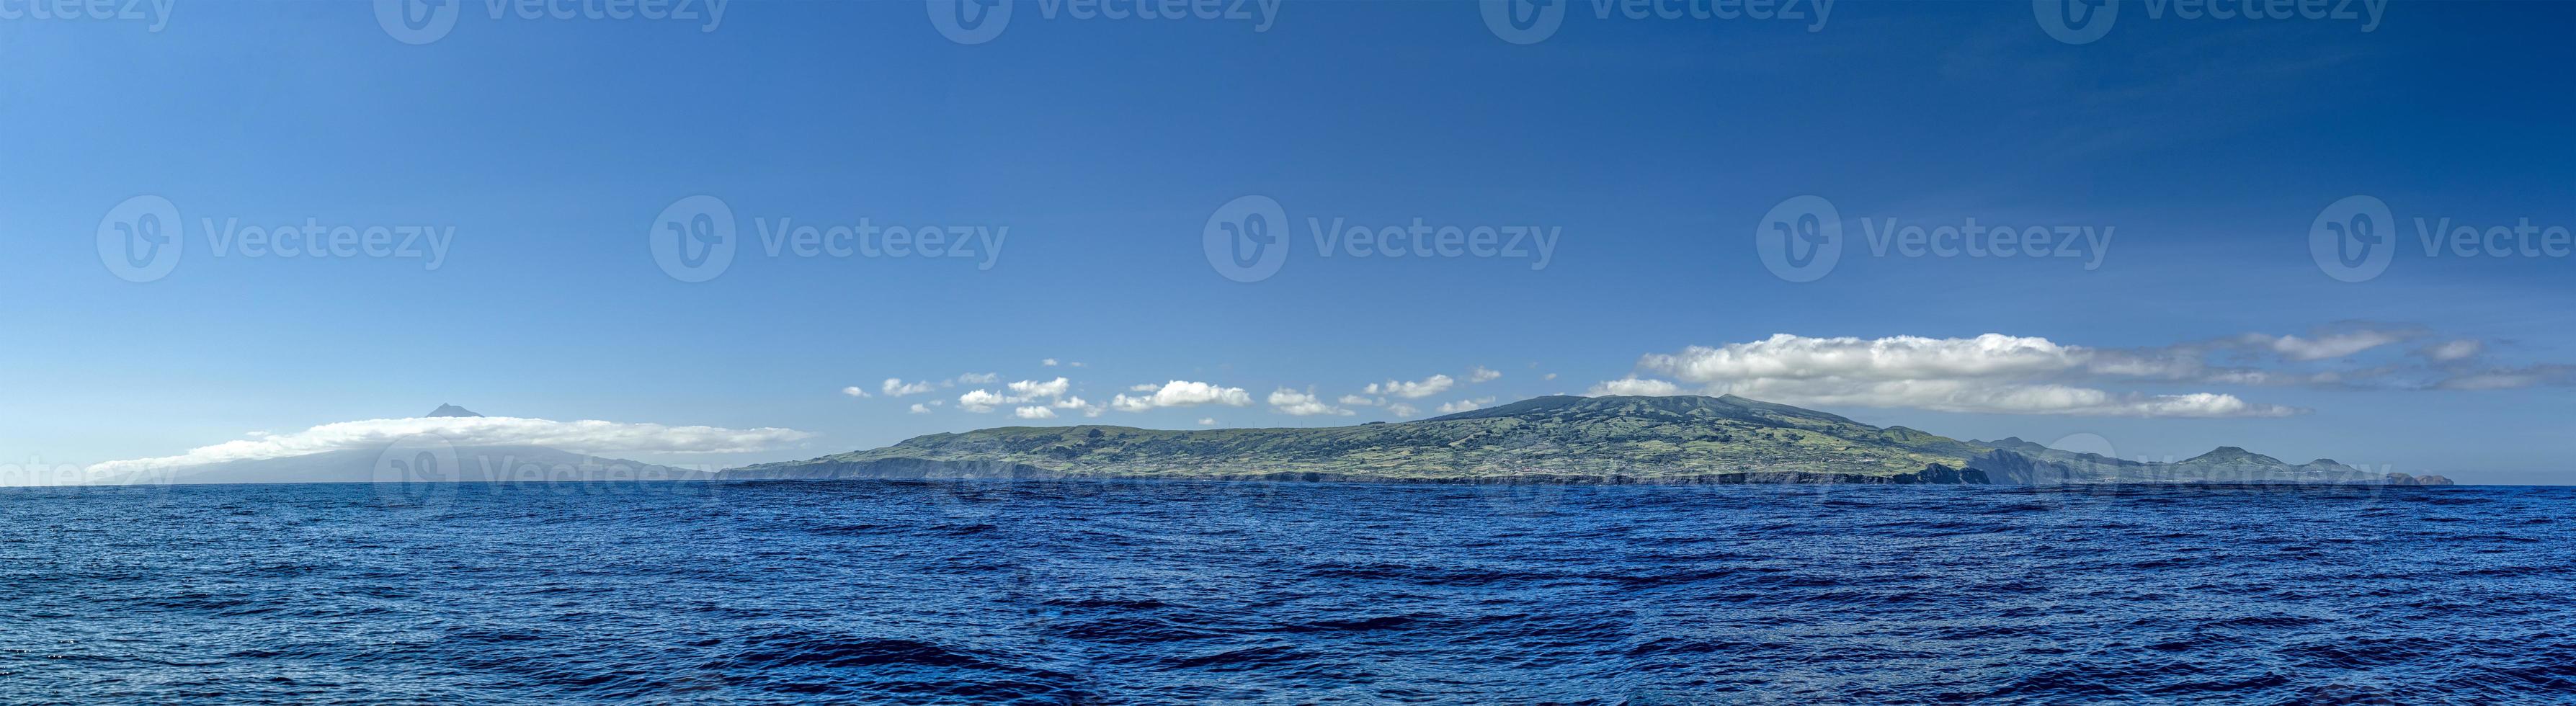 faial och pico ö azorerna panorama från de hav foto